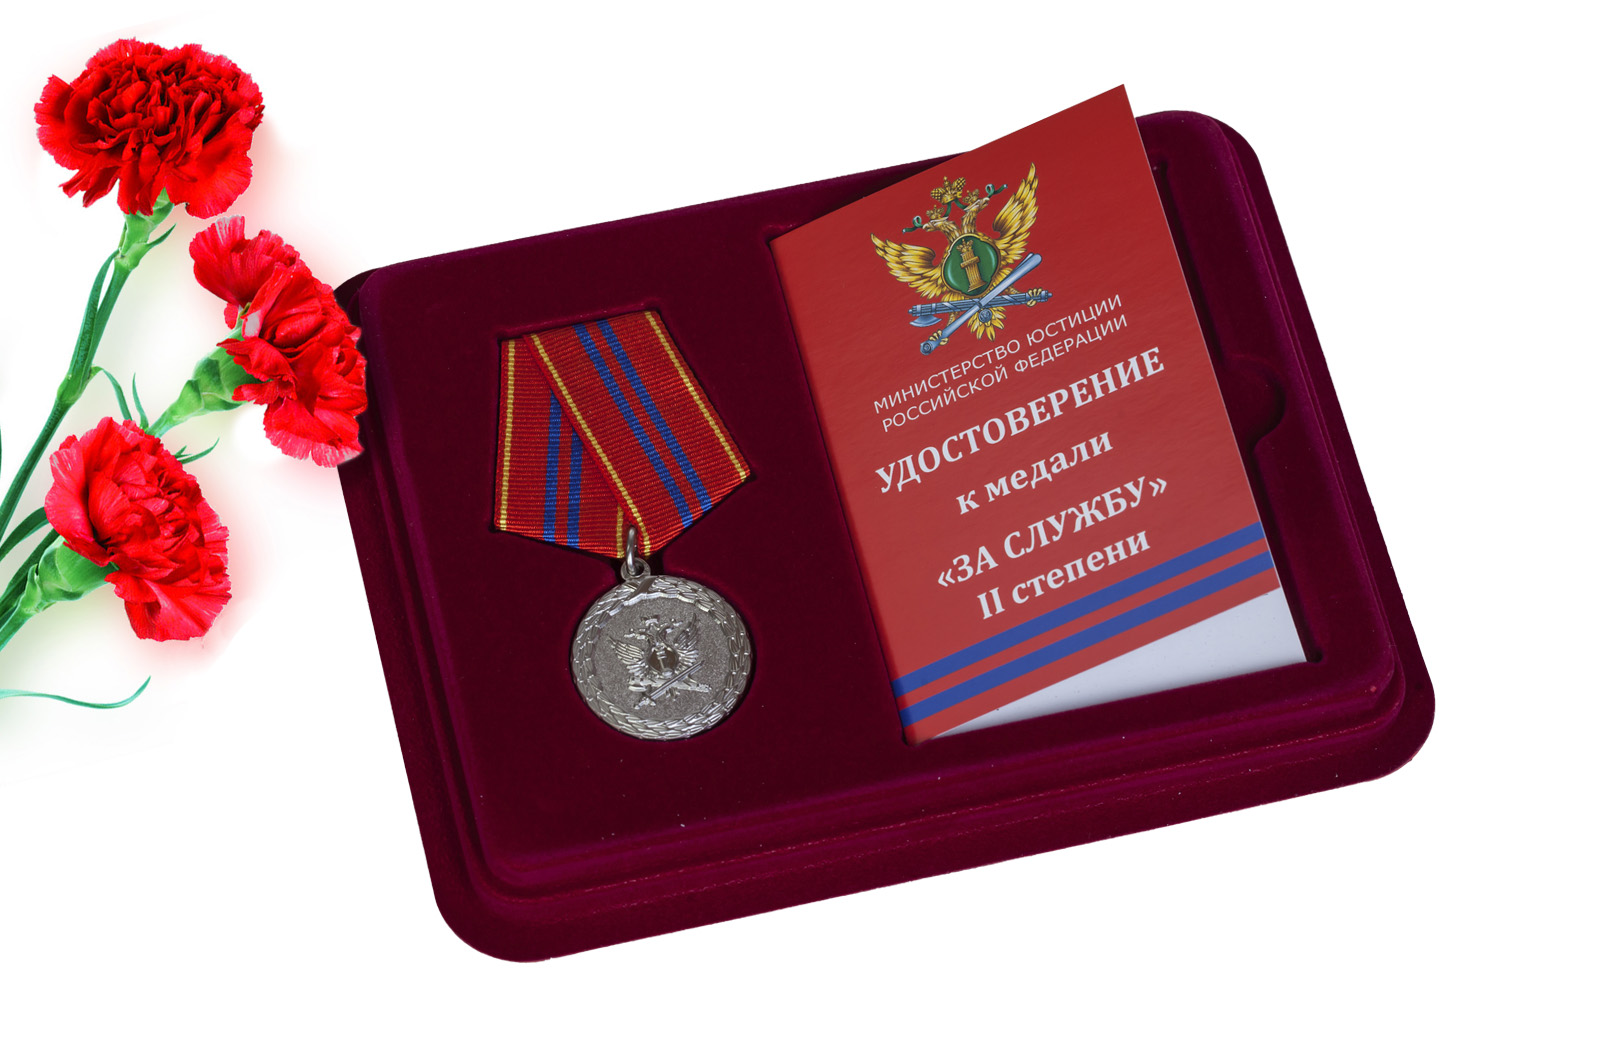 Купить медаль Минюста РФ За службу 2 степени в подарок мужчине